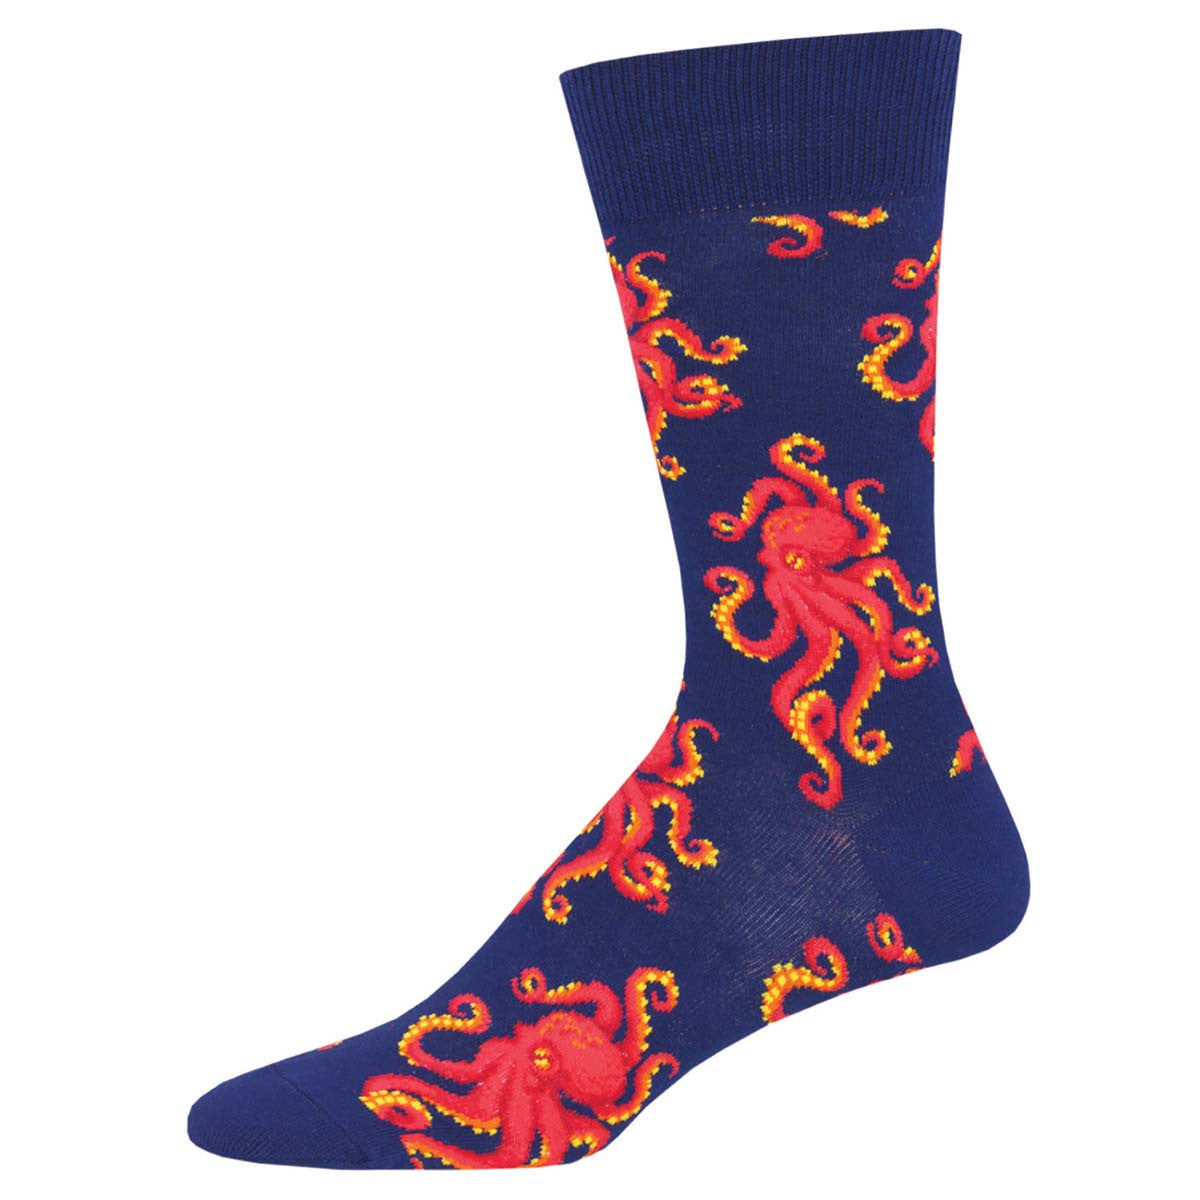 Octopus men's socks